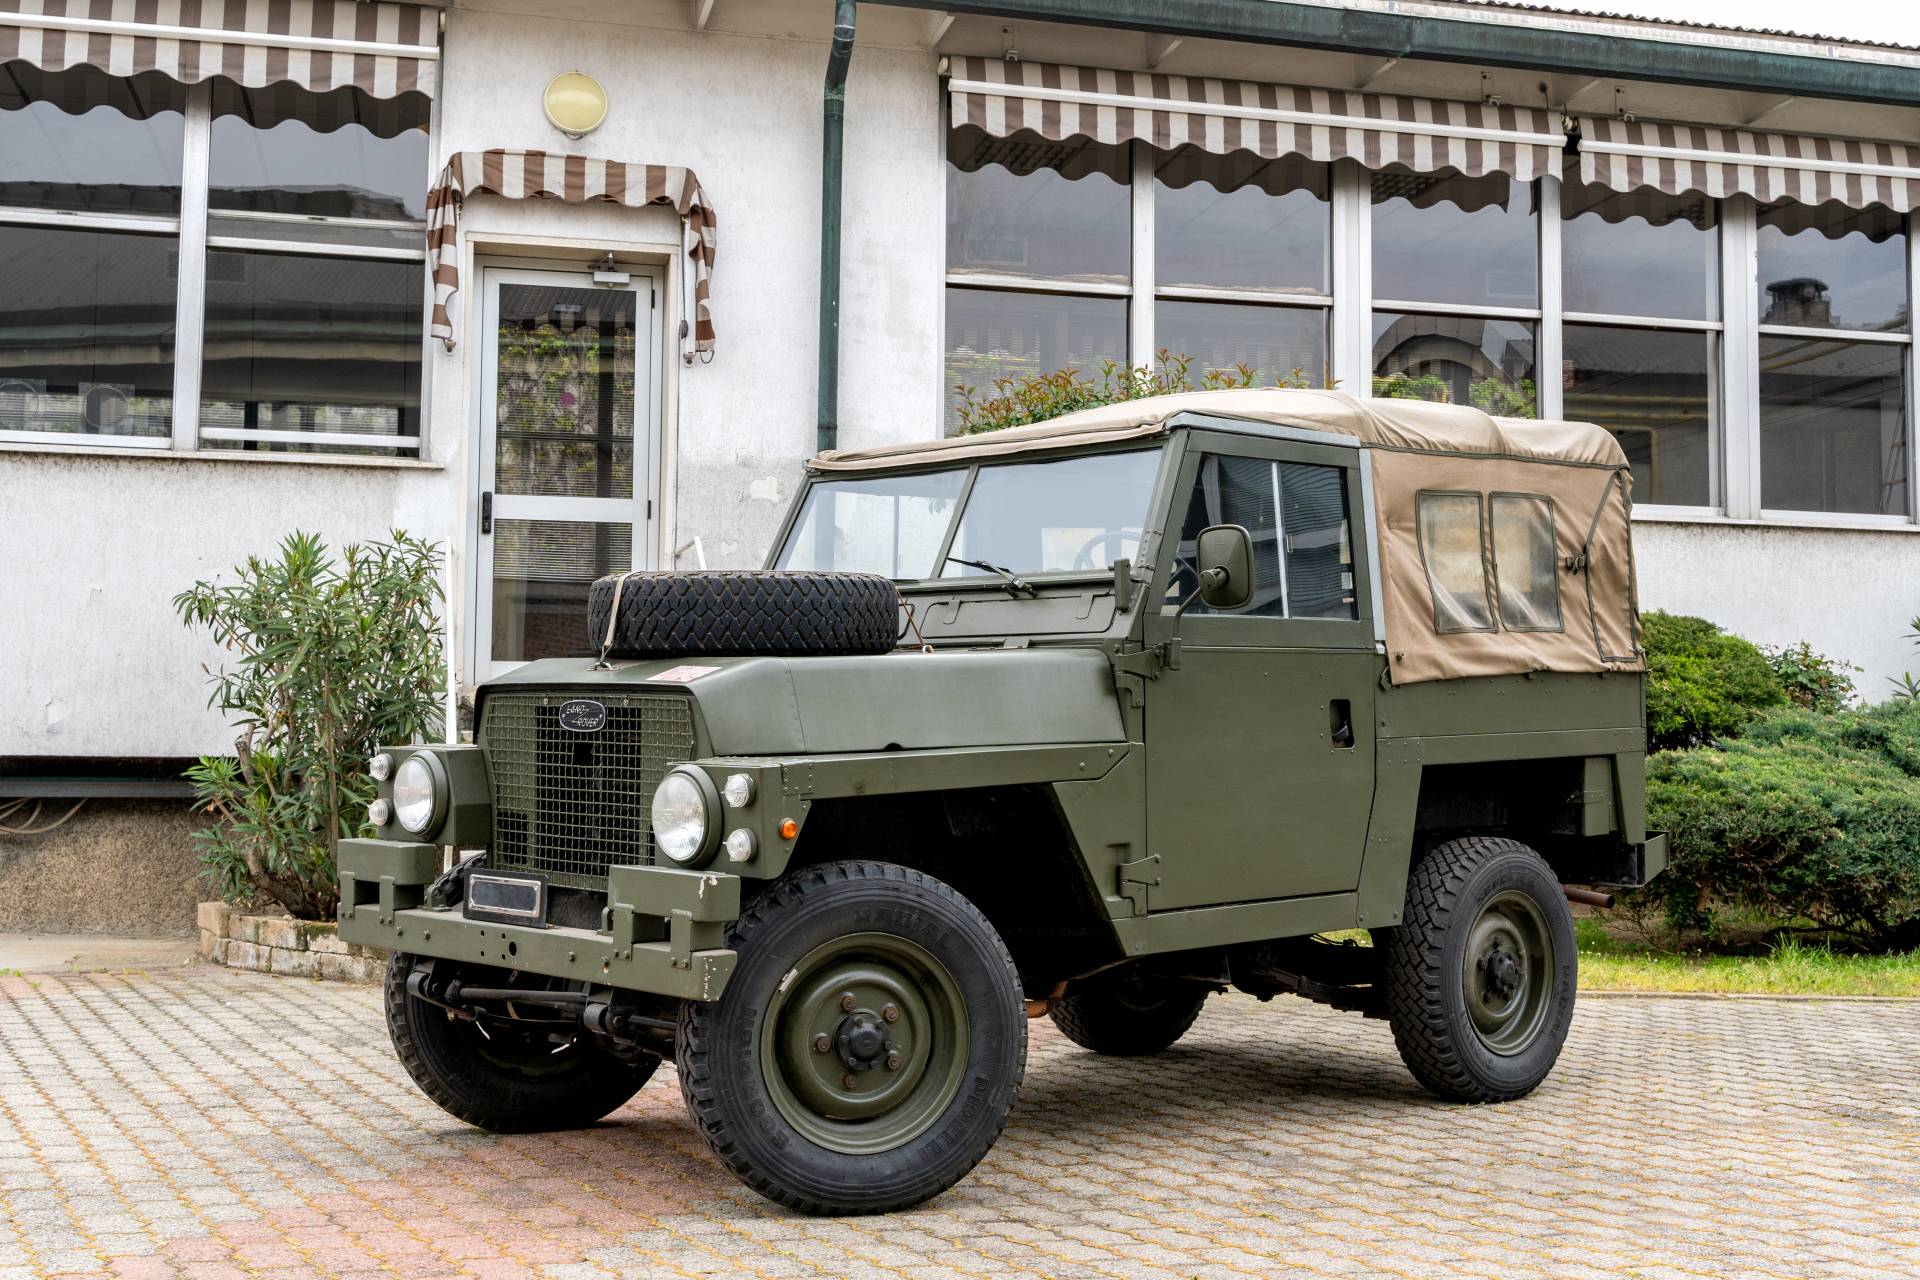 Dor Zonder twijfel Verbinding verbroken Te koop: Land Rover 88 Lightweight (1973) aangeboden voor € 12.000